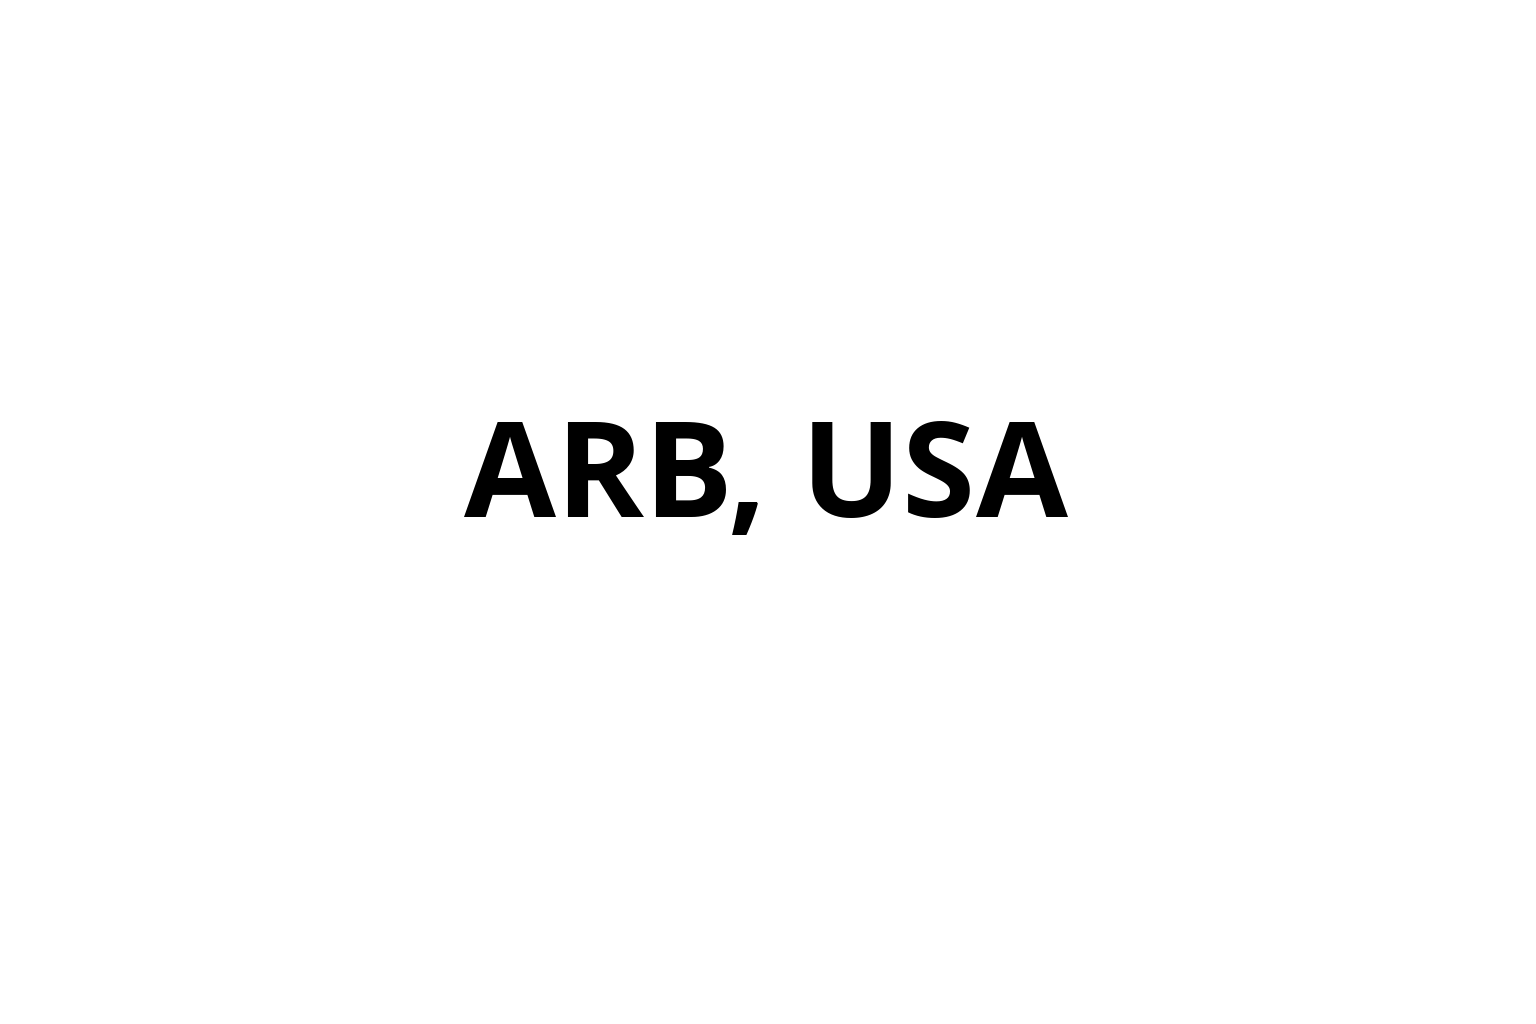 ARB, USA